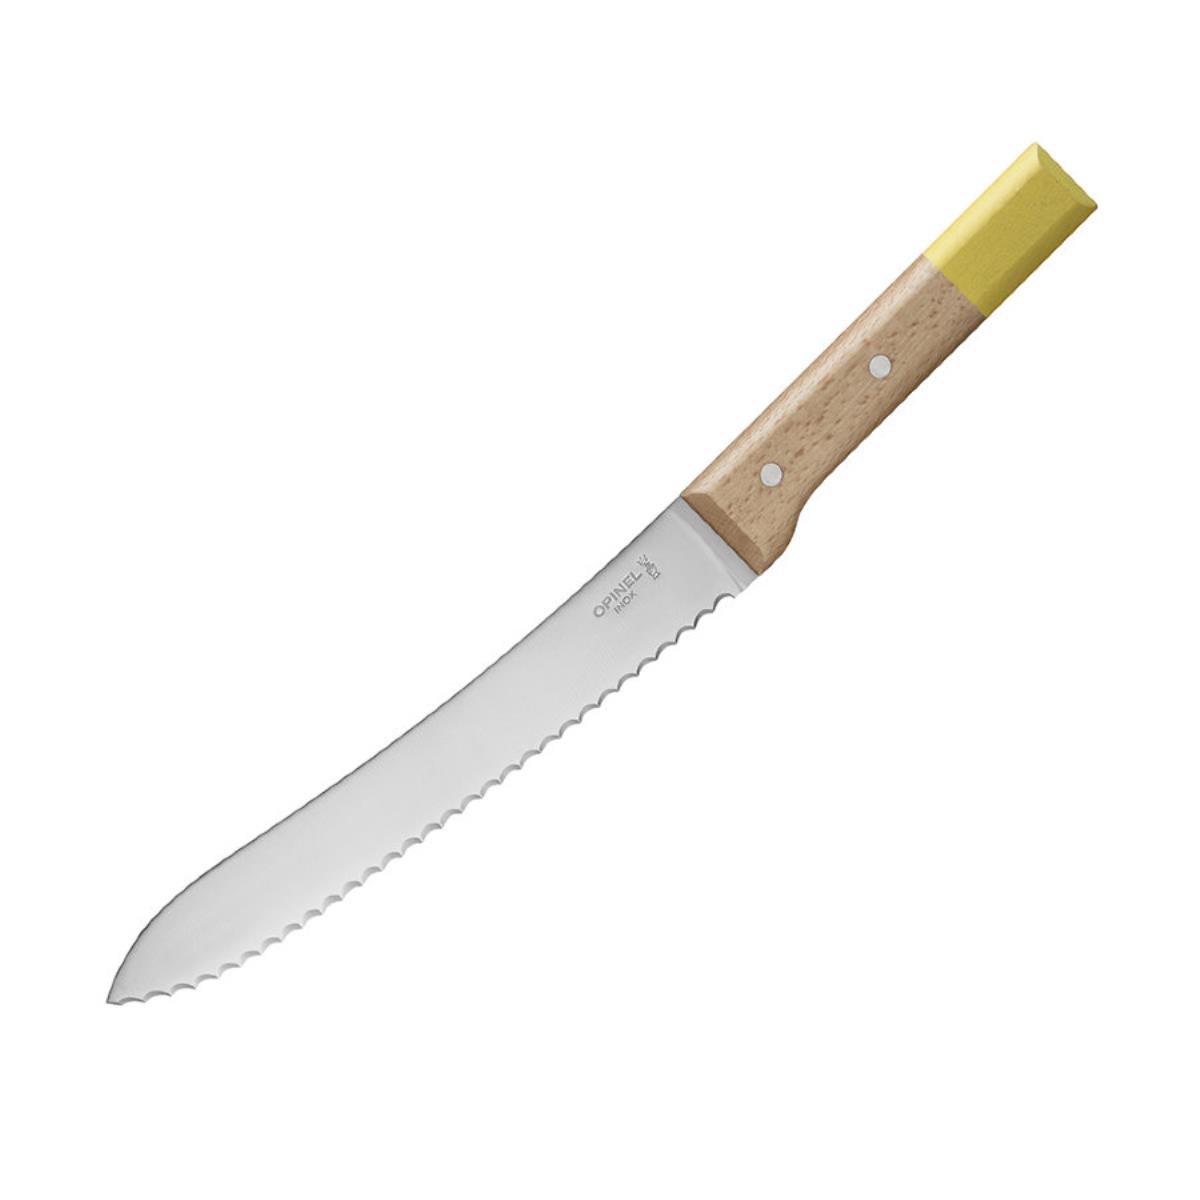 Нож кухонный №116 VRI Parallele для хлеба (нерж. сталь, рукоять бук, длина клинка 21 см) OPINEL